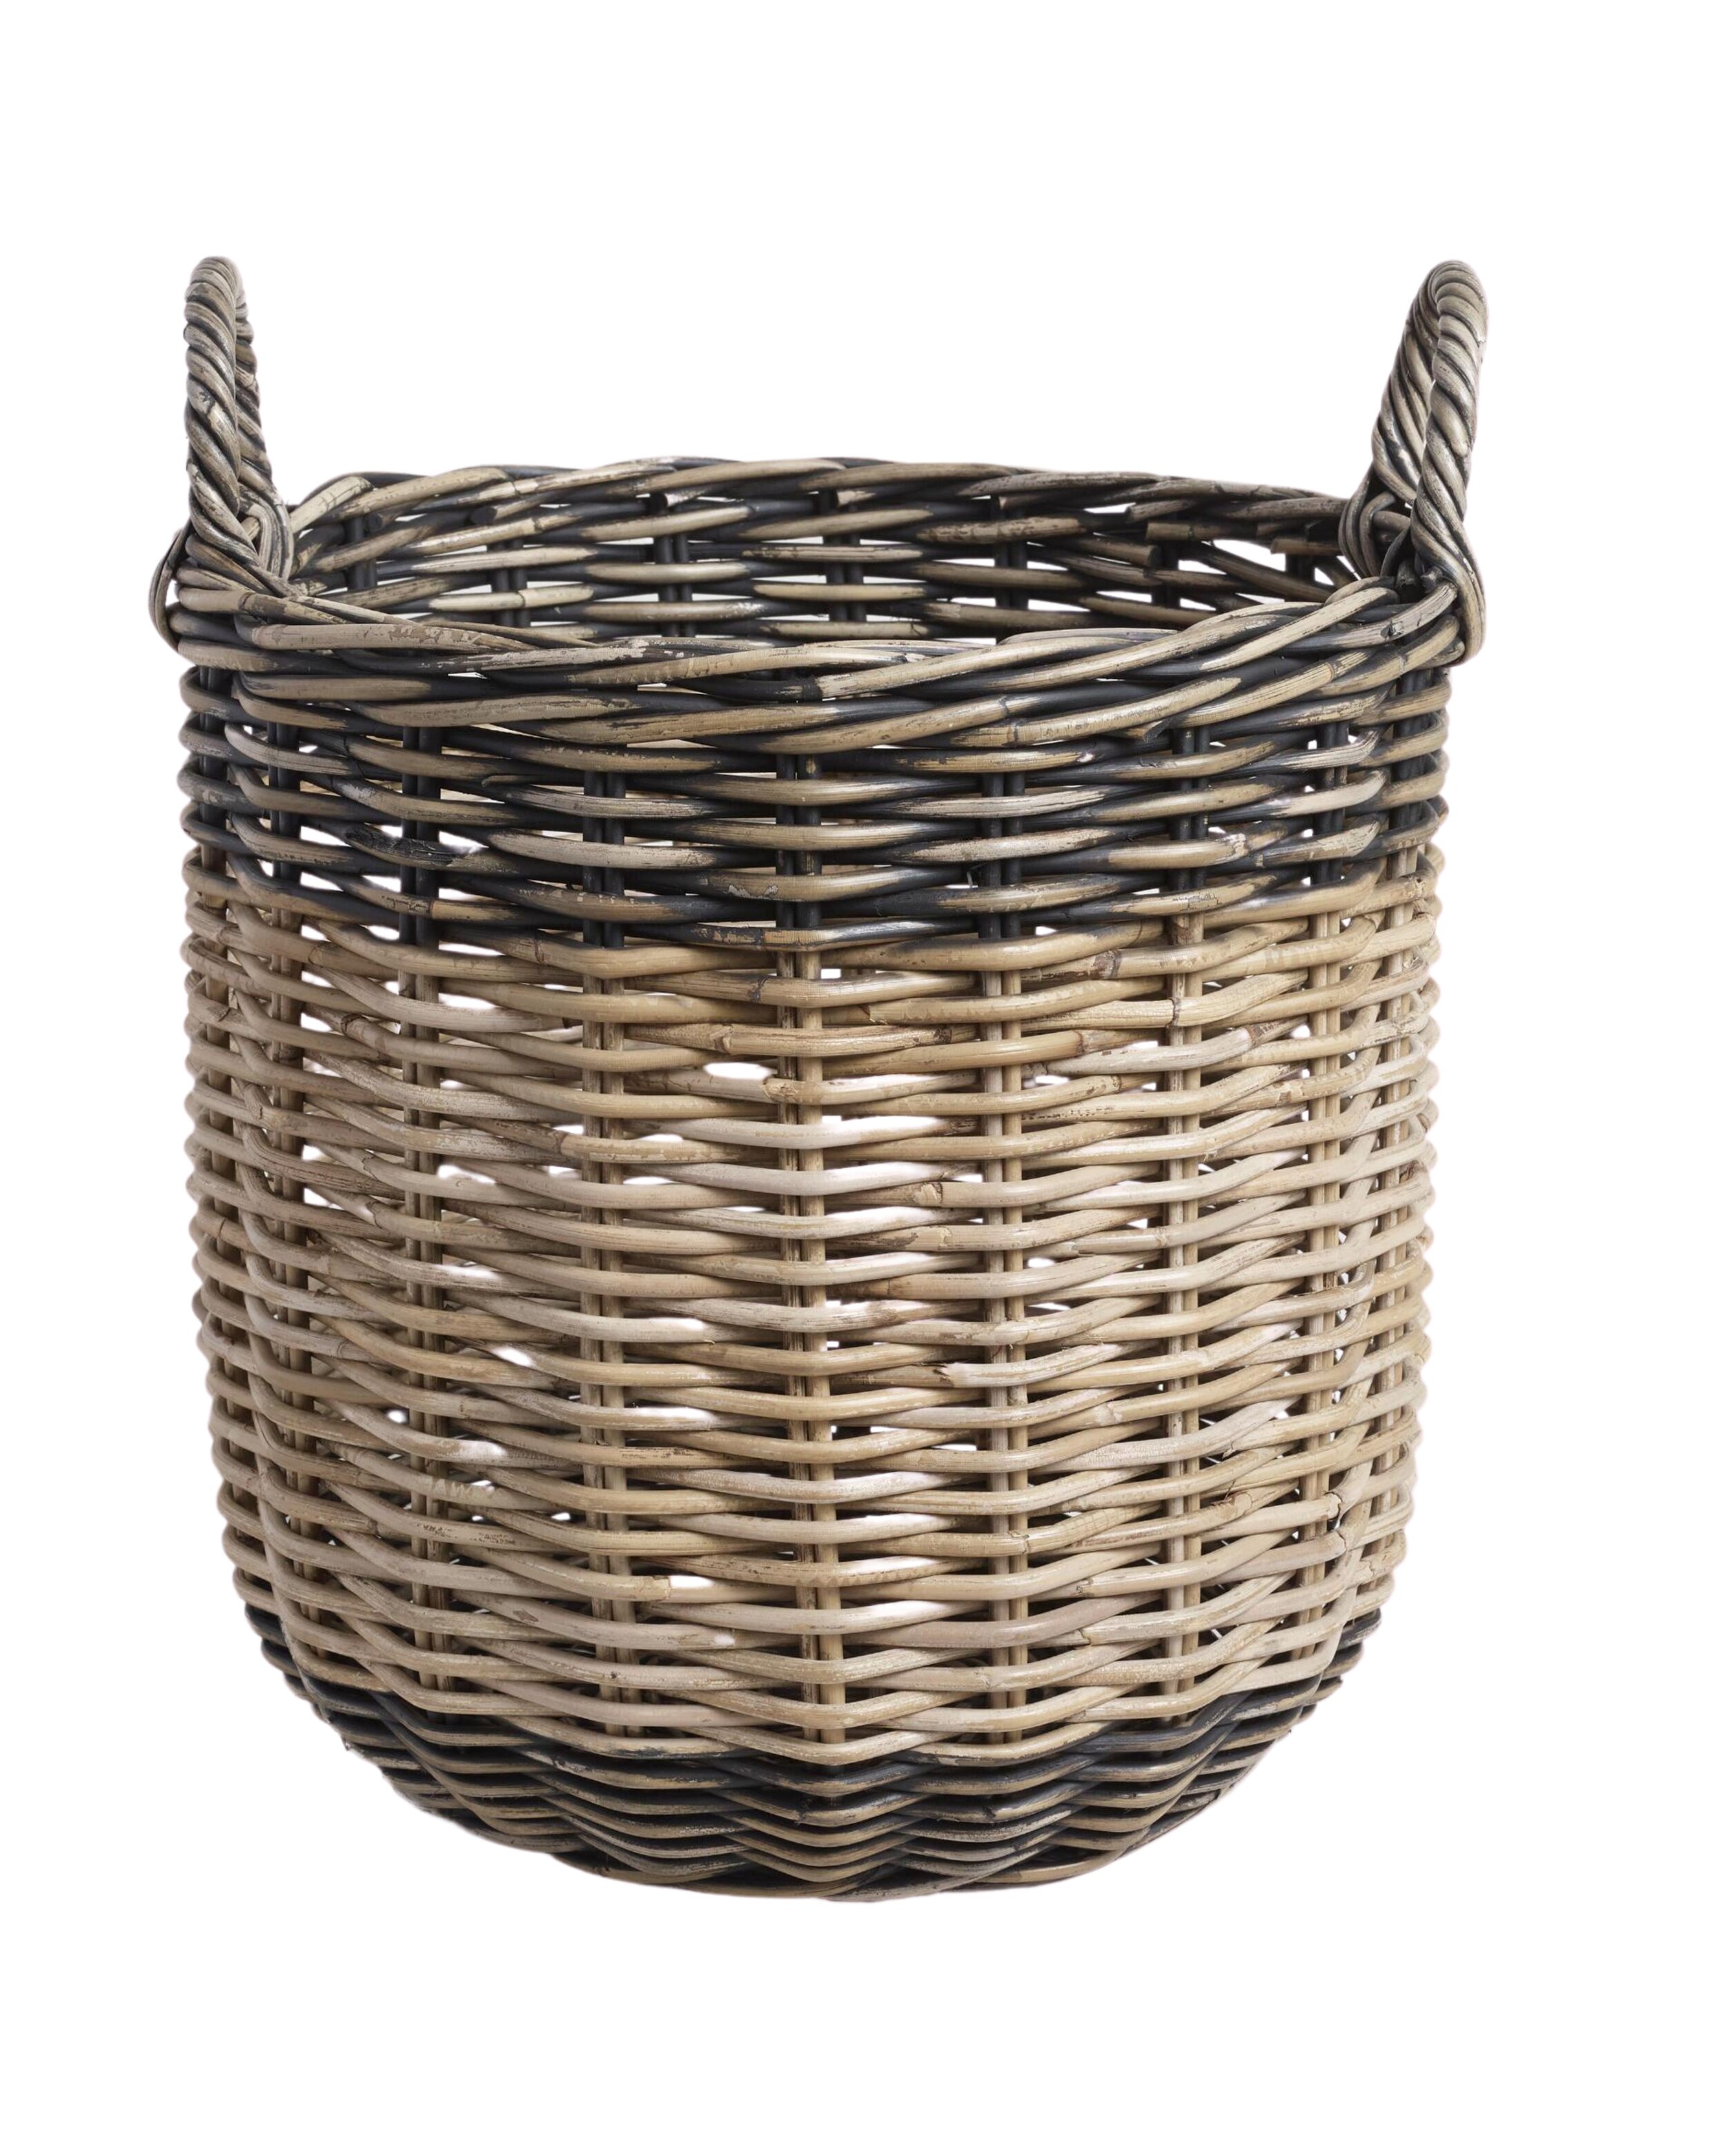 Grey Kubu Wicker Oval Laundry Basket Perfect Storage Decor 